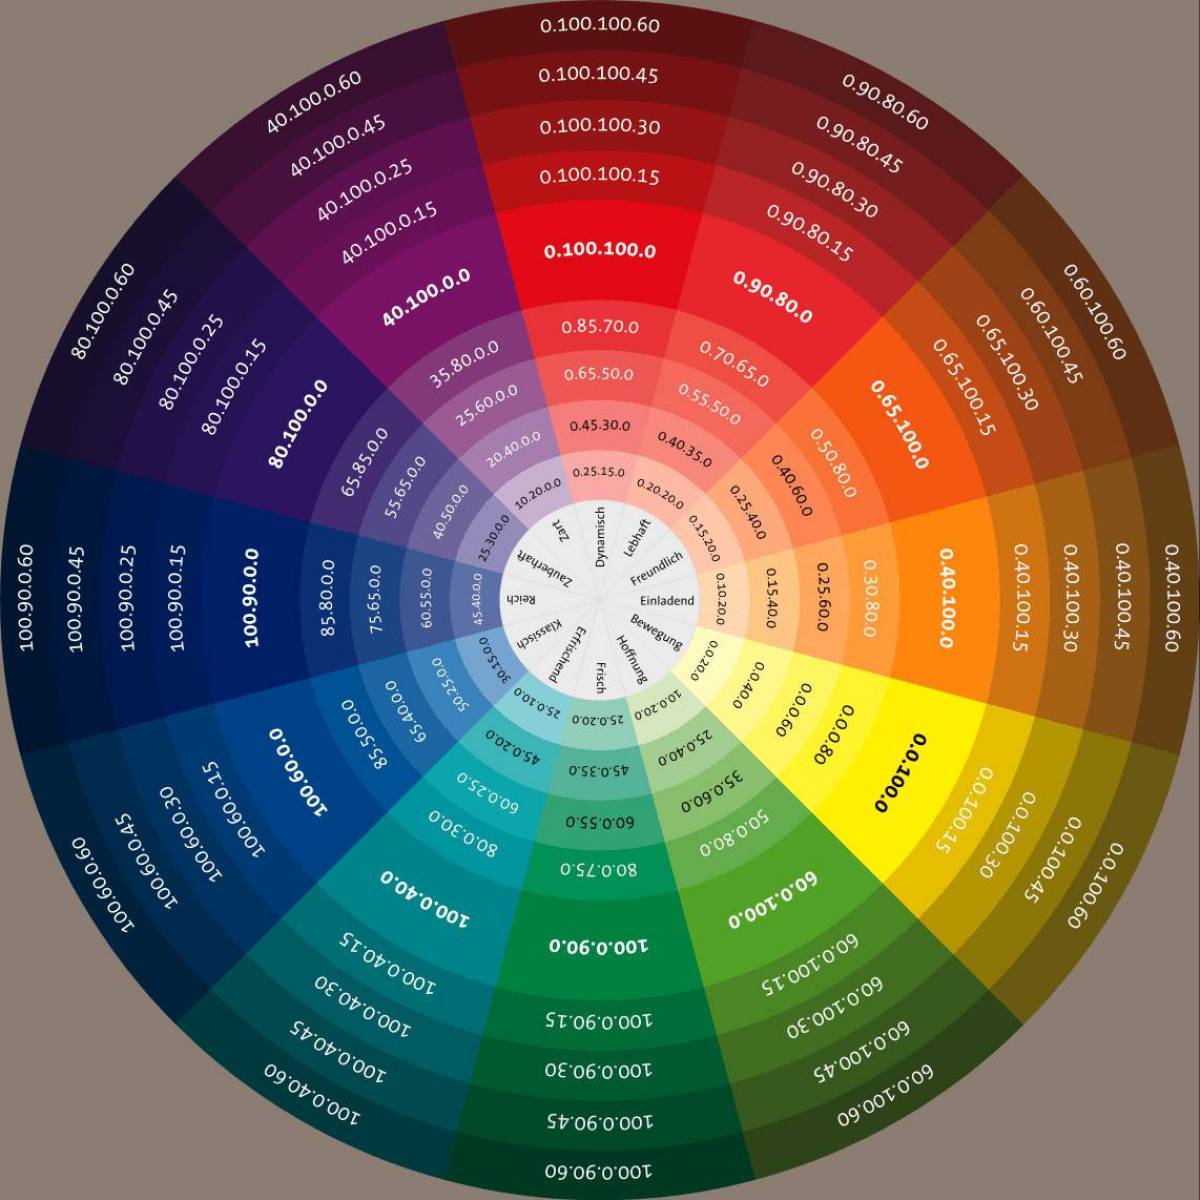 Описание палитры цветов. Цветовой круг Иттена RGB. Цветовой круг Иттена с названиями цветов. Цветовой круг Иттена бежевый цвет. Круг Иттена и цветовые сочетания.